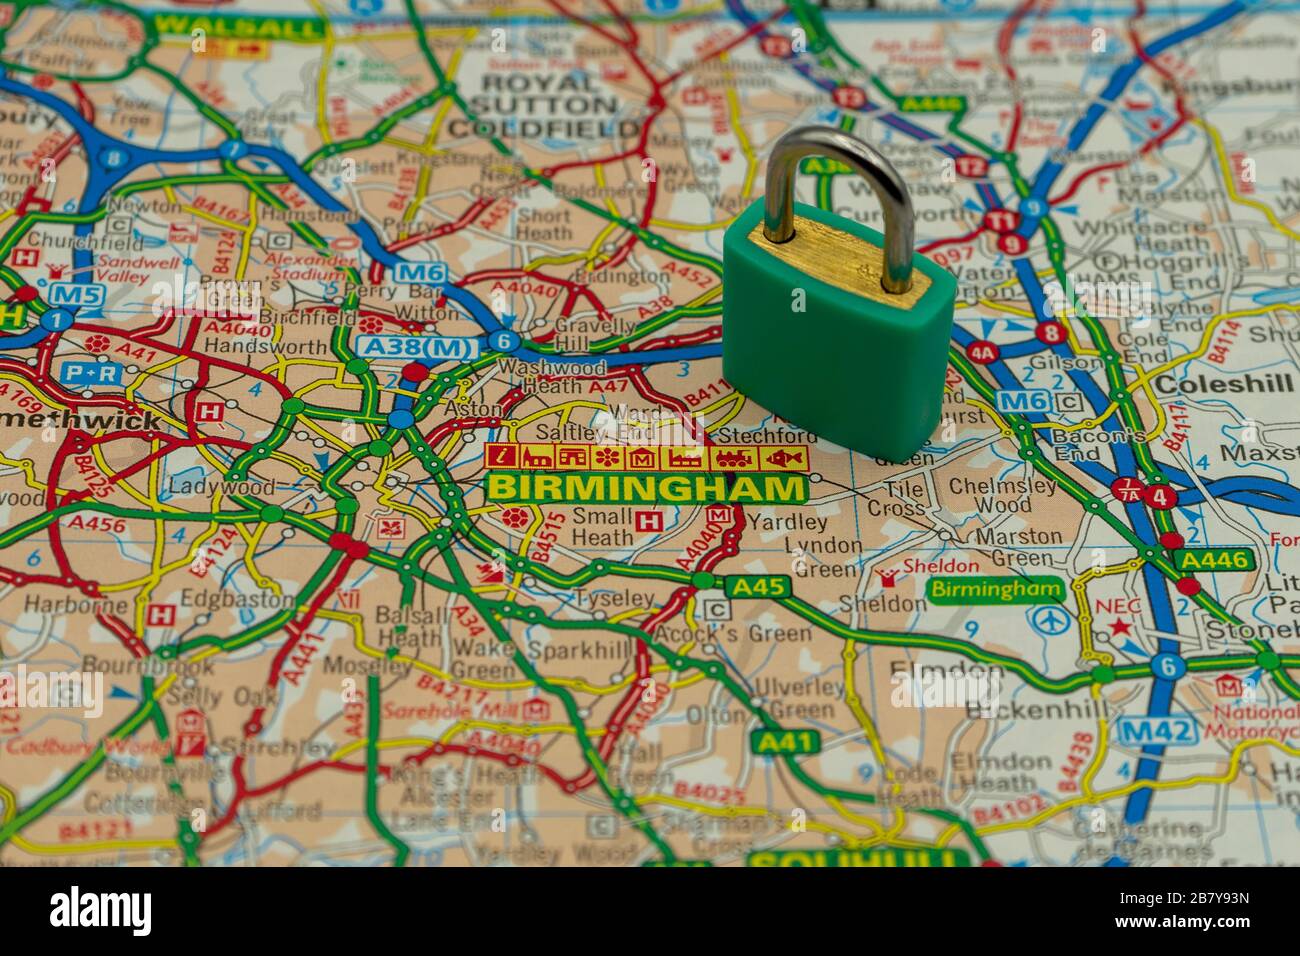 Birmingham Royaume-Uni affiché sur une carte routière ou géographique avec un cadenas en haut pour représenter une ville en lock-down Banque D'Images